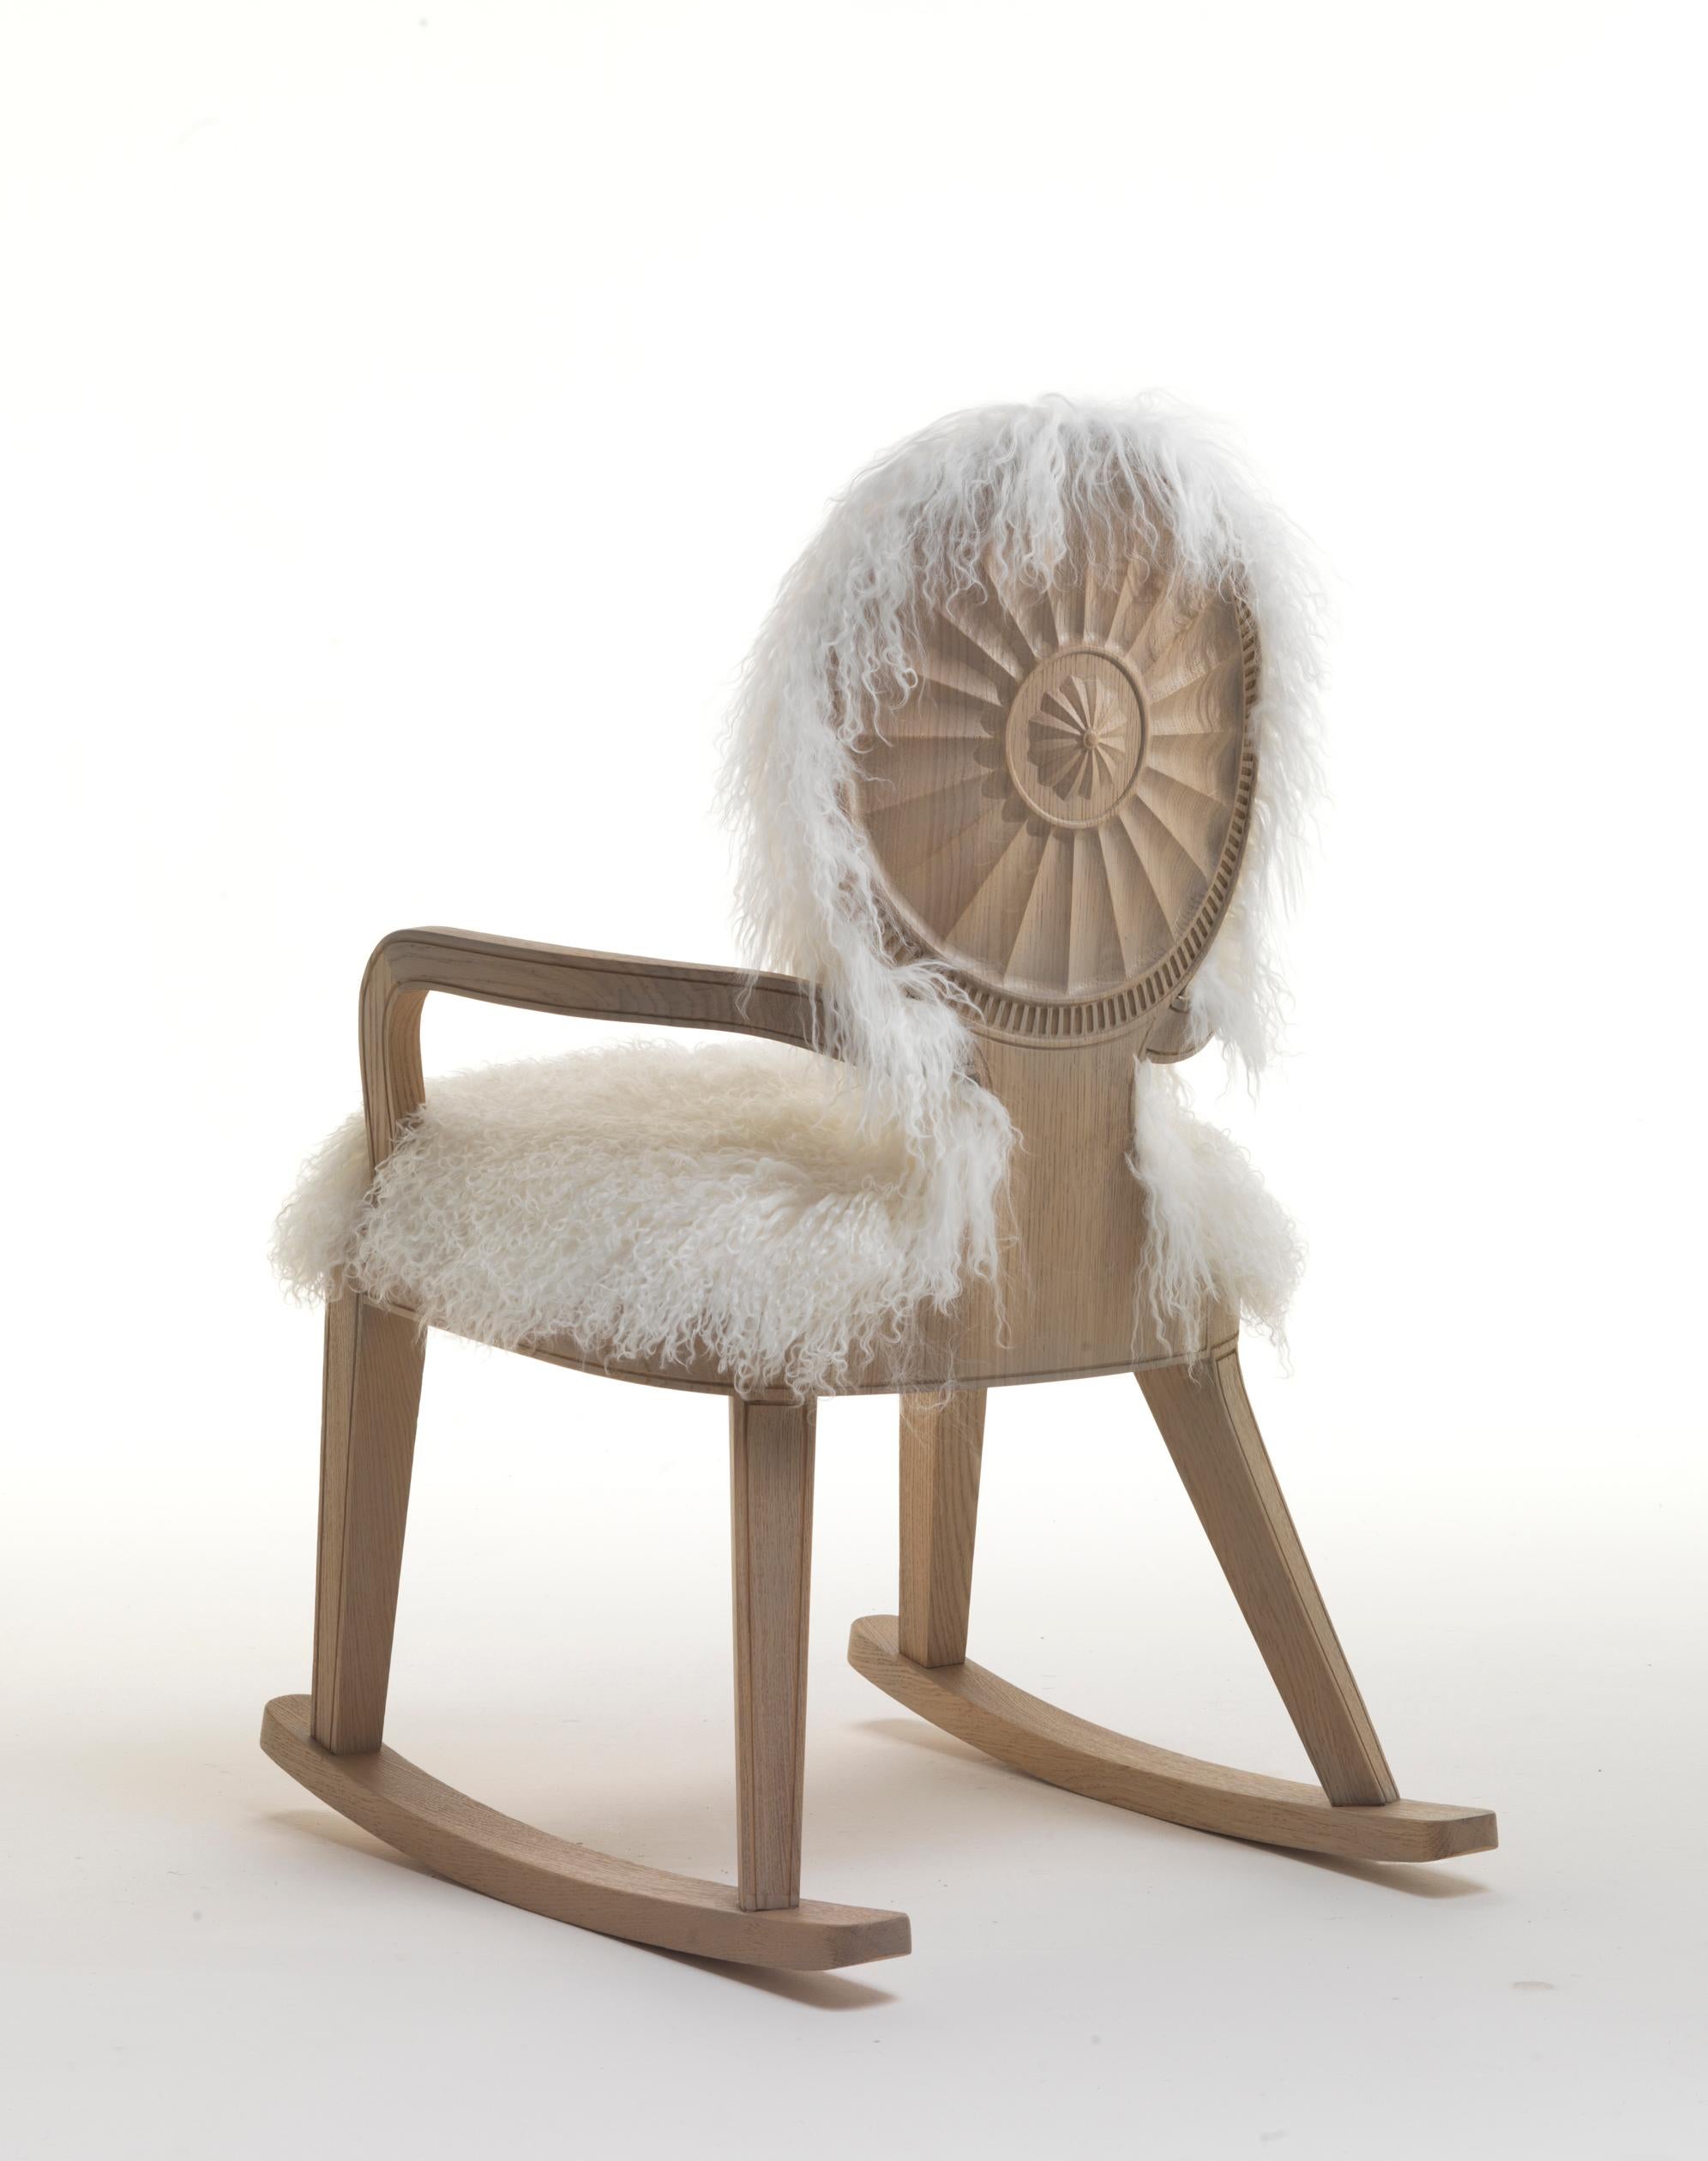 Unser Monarch-Stuhl ist eine exquisite Kreation, die von Archer Humphryes Architects entworfen wurde und über das herkömmliche Design eines Schaukelstuhls hinausgeht. Dieses handgefertigte Meisterwerk ist ein harmonisches Zusammenspiel von Struktur